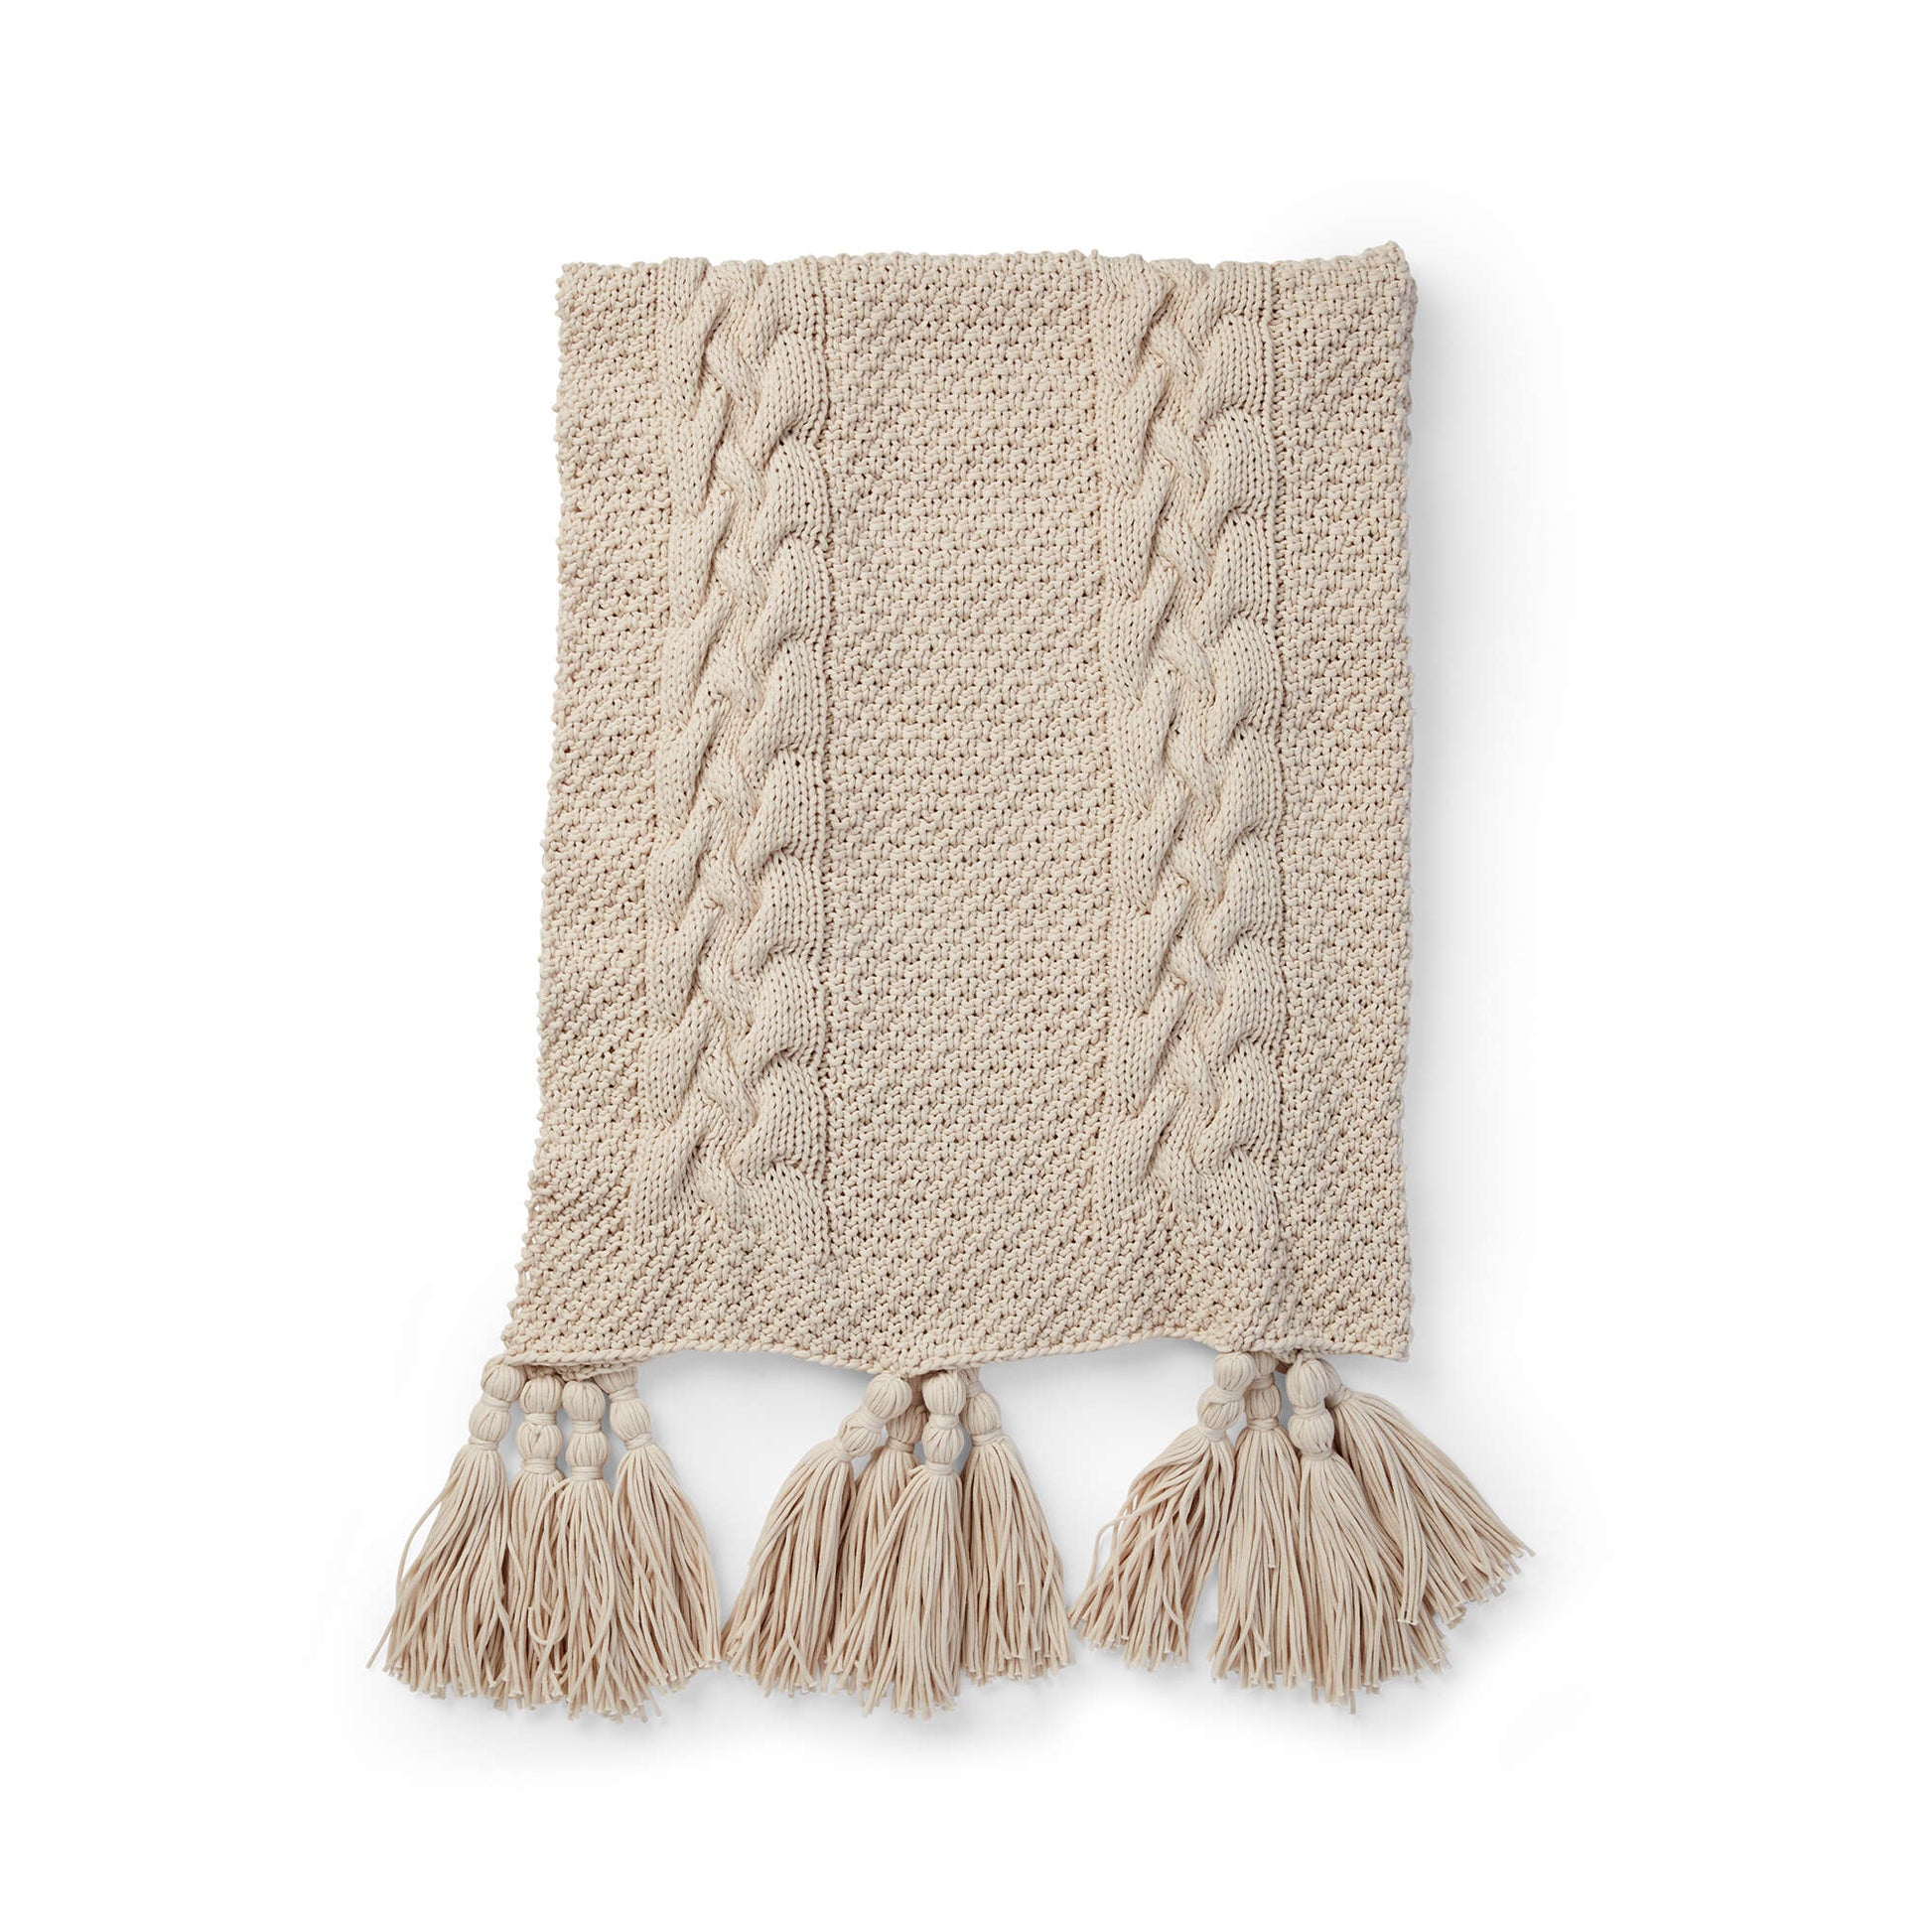 Bernat Tuck Stitch Knit Blanket Single Size